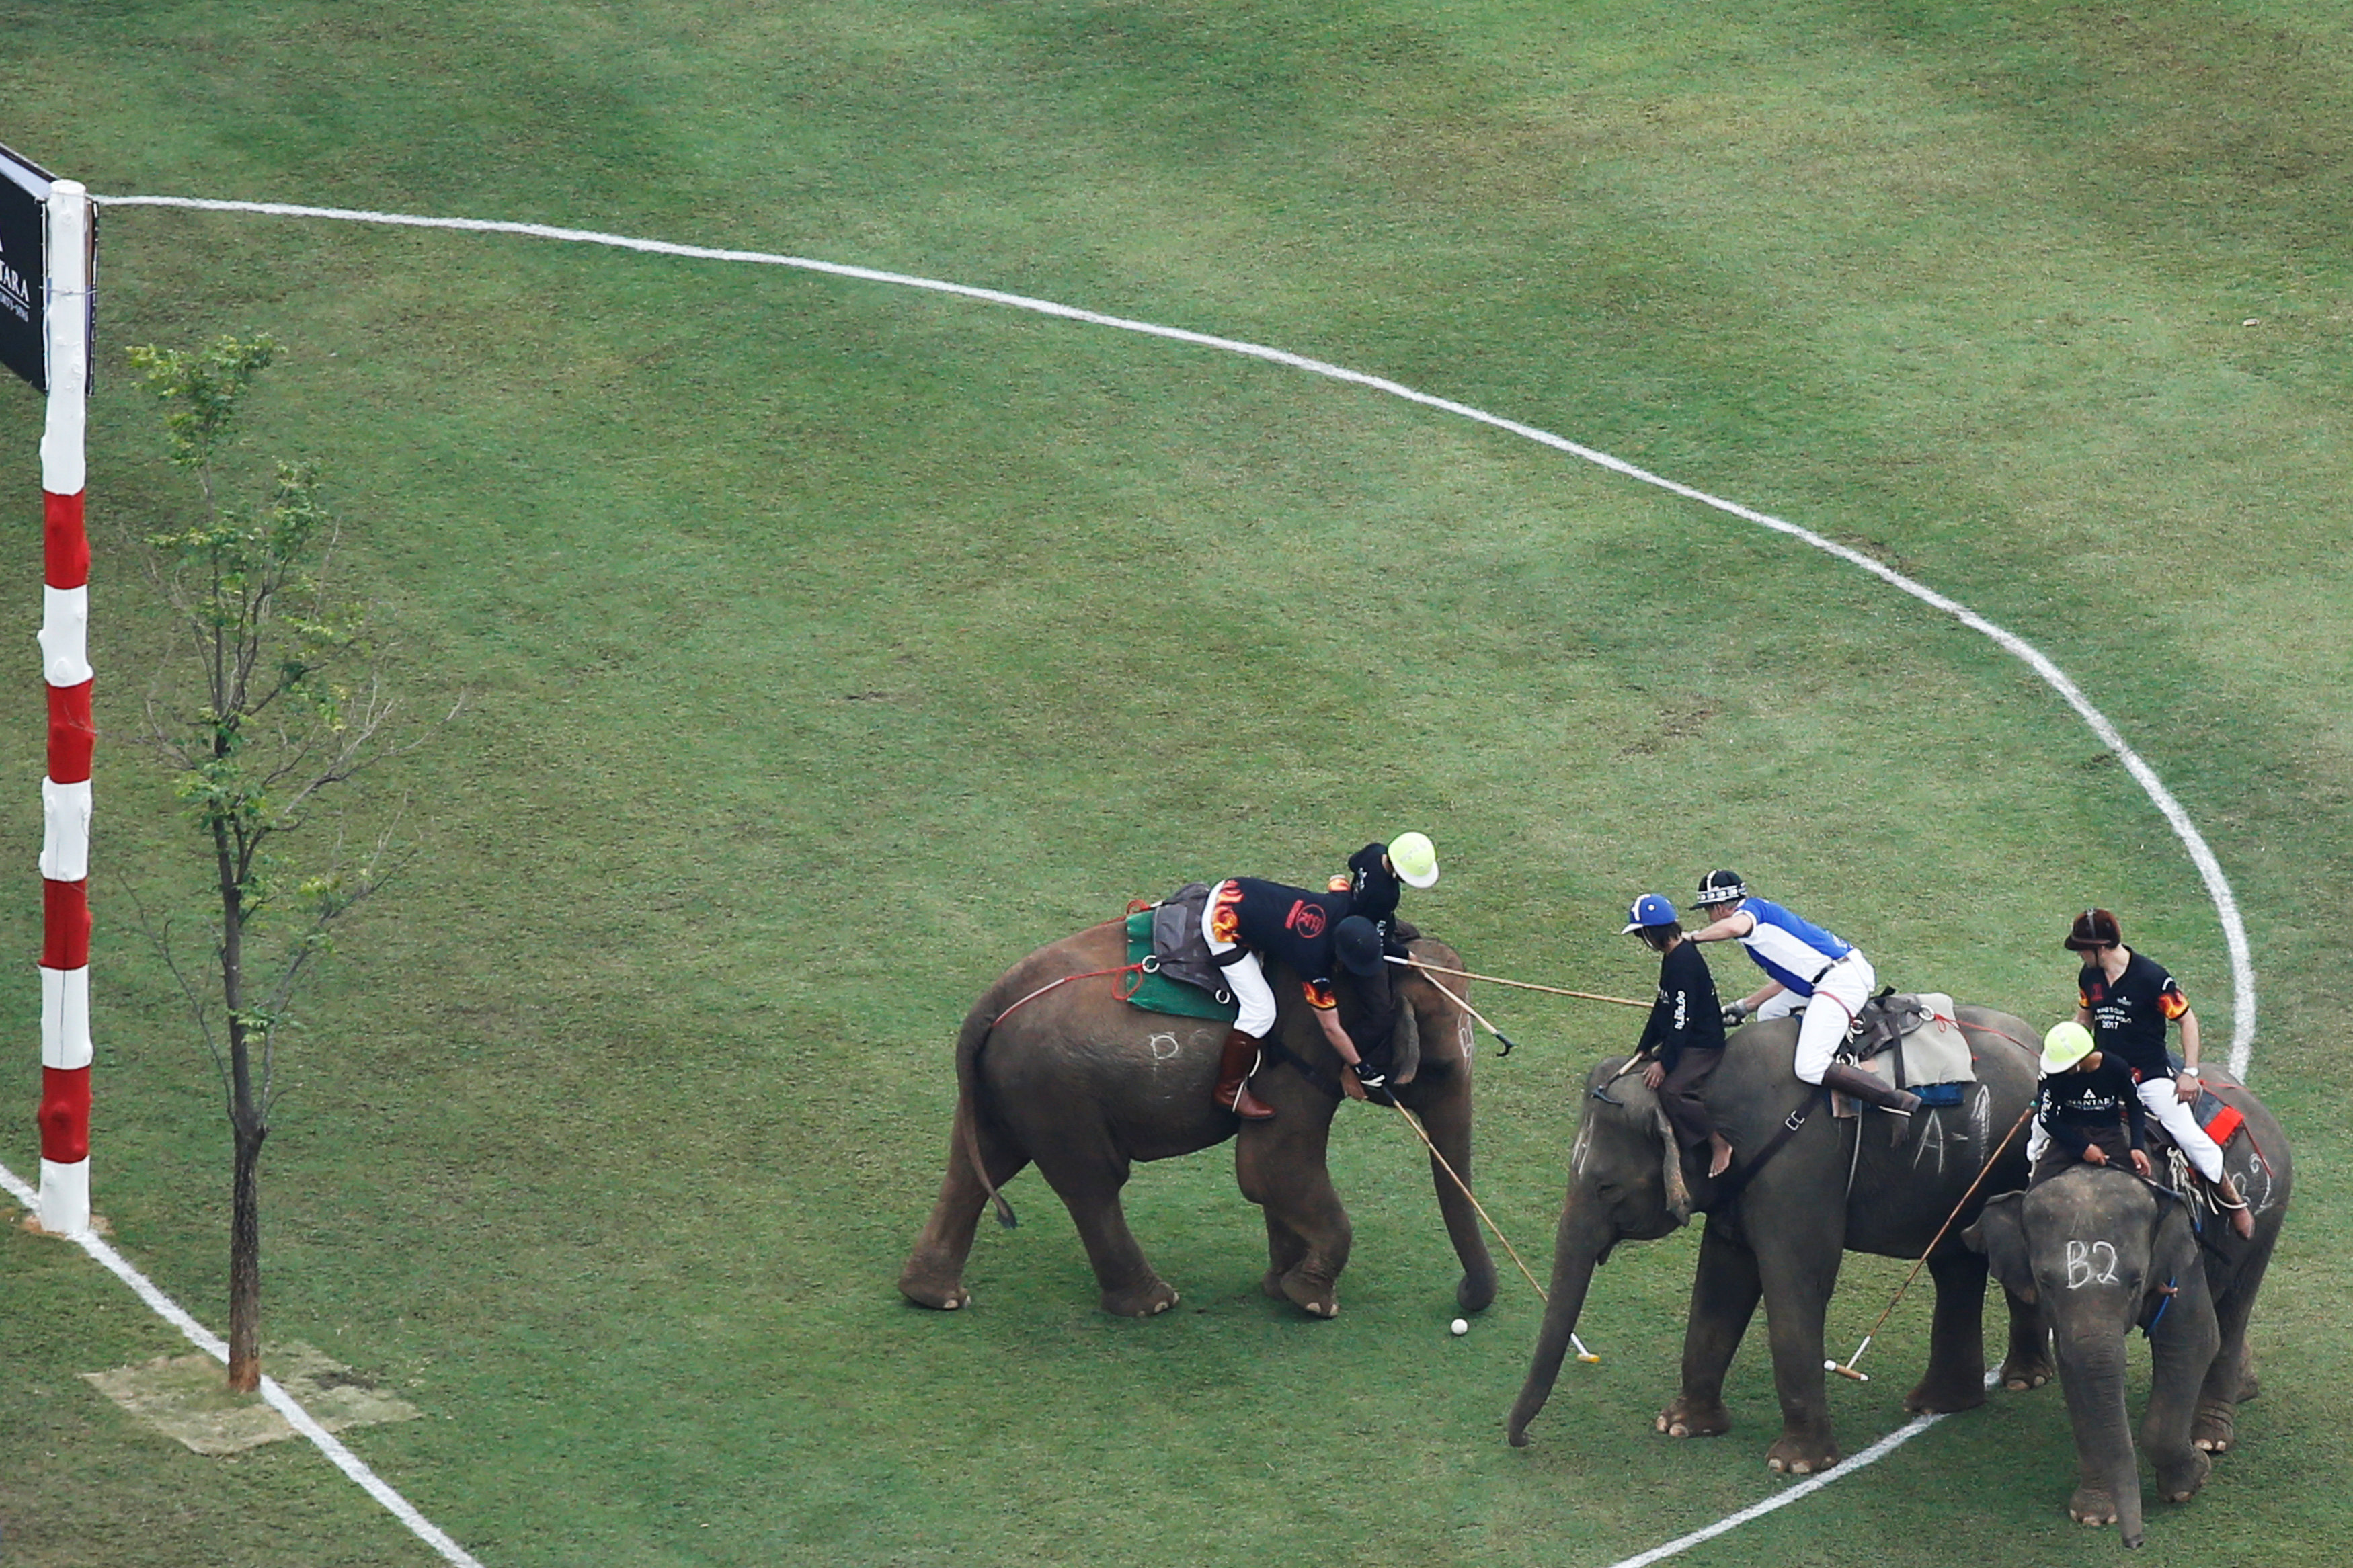 انطلاق بطولة كأس ملك تايلاند لرياضة بولو الفيلة 2017 فى بانكوك